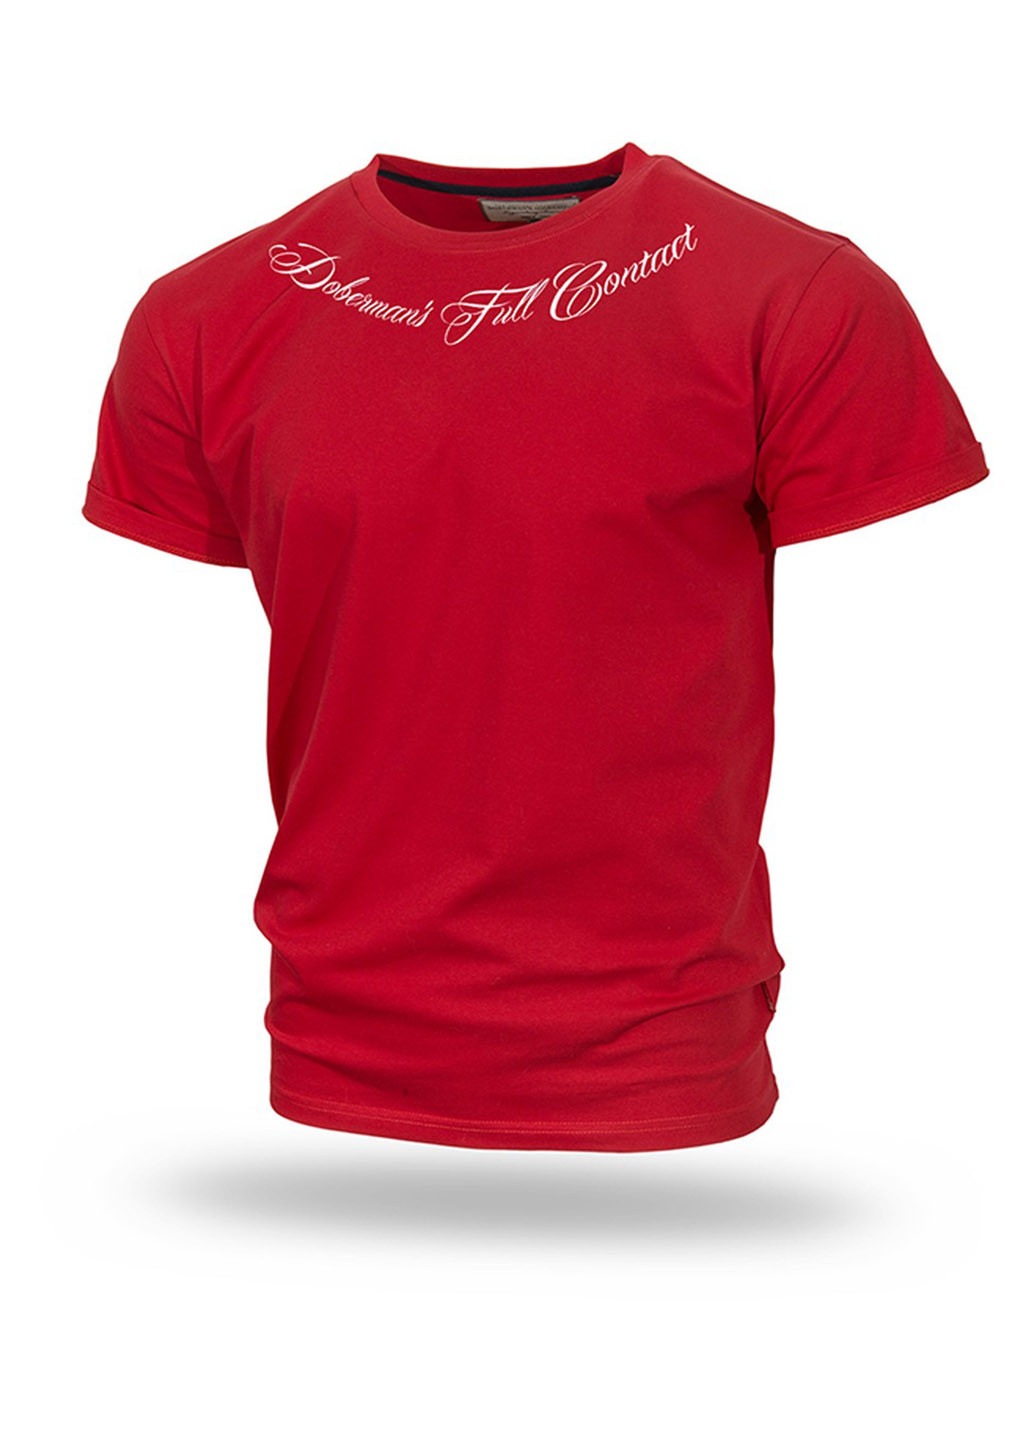 Красная футболка dobermans full contact ts159rd Dobermans Aggressive